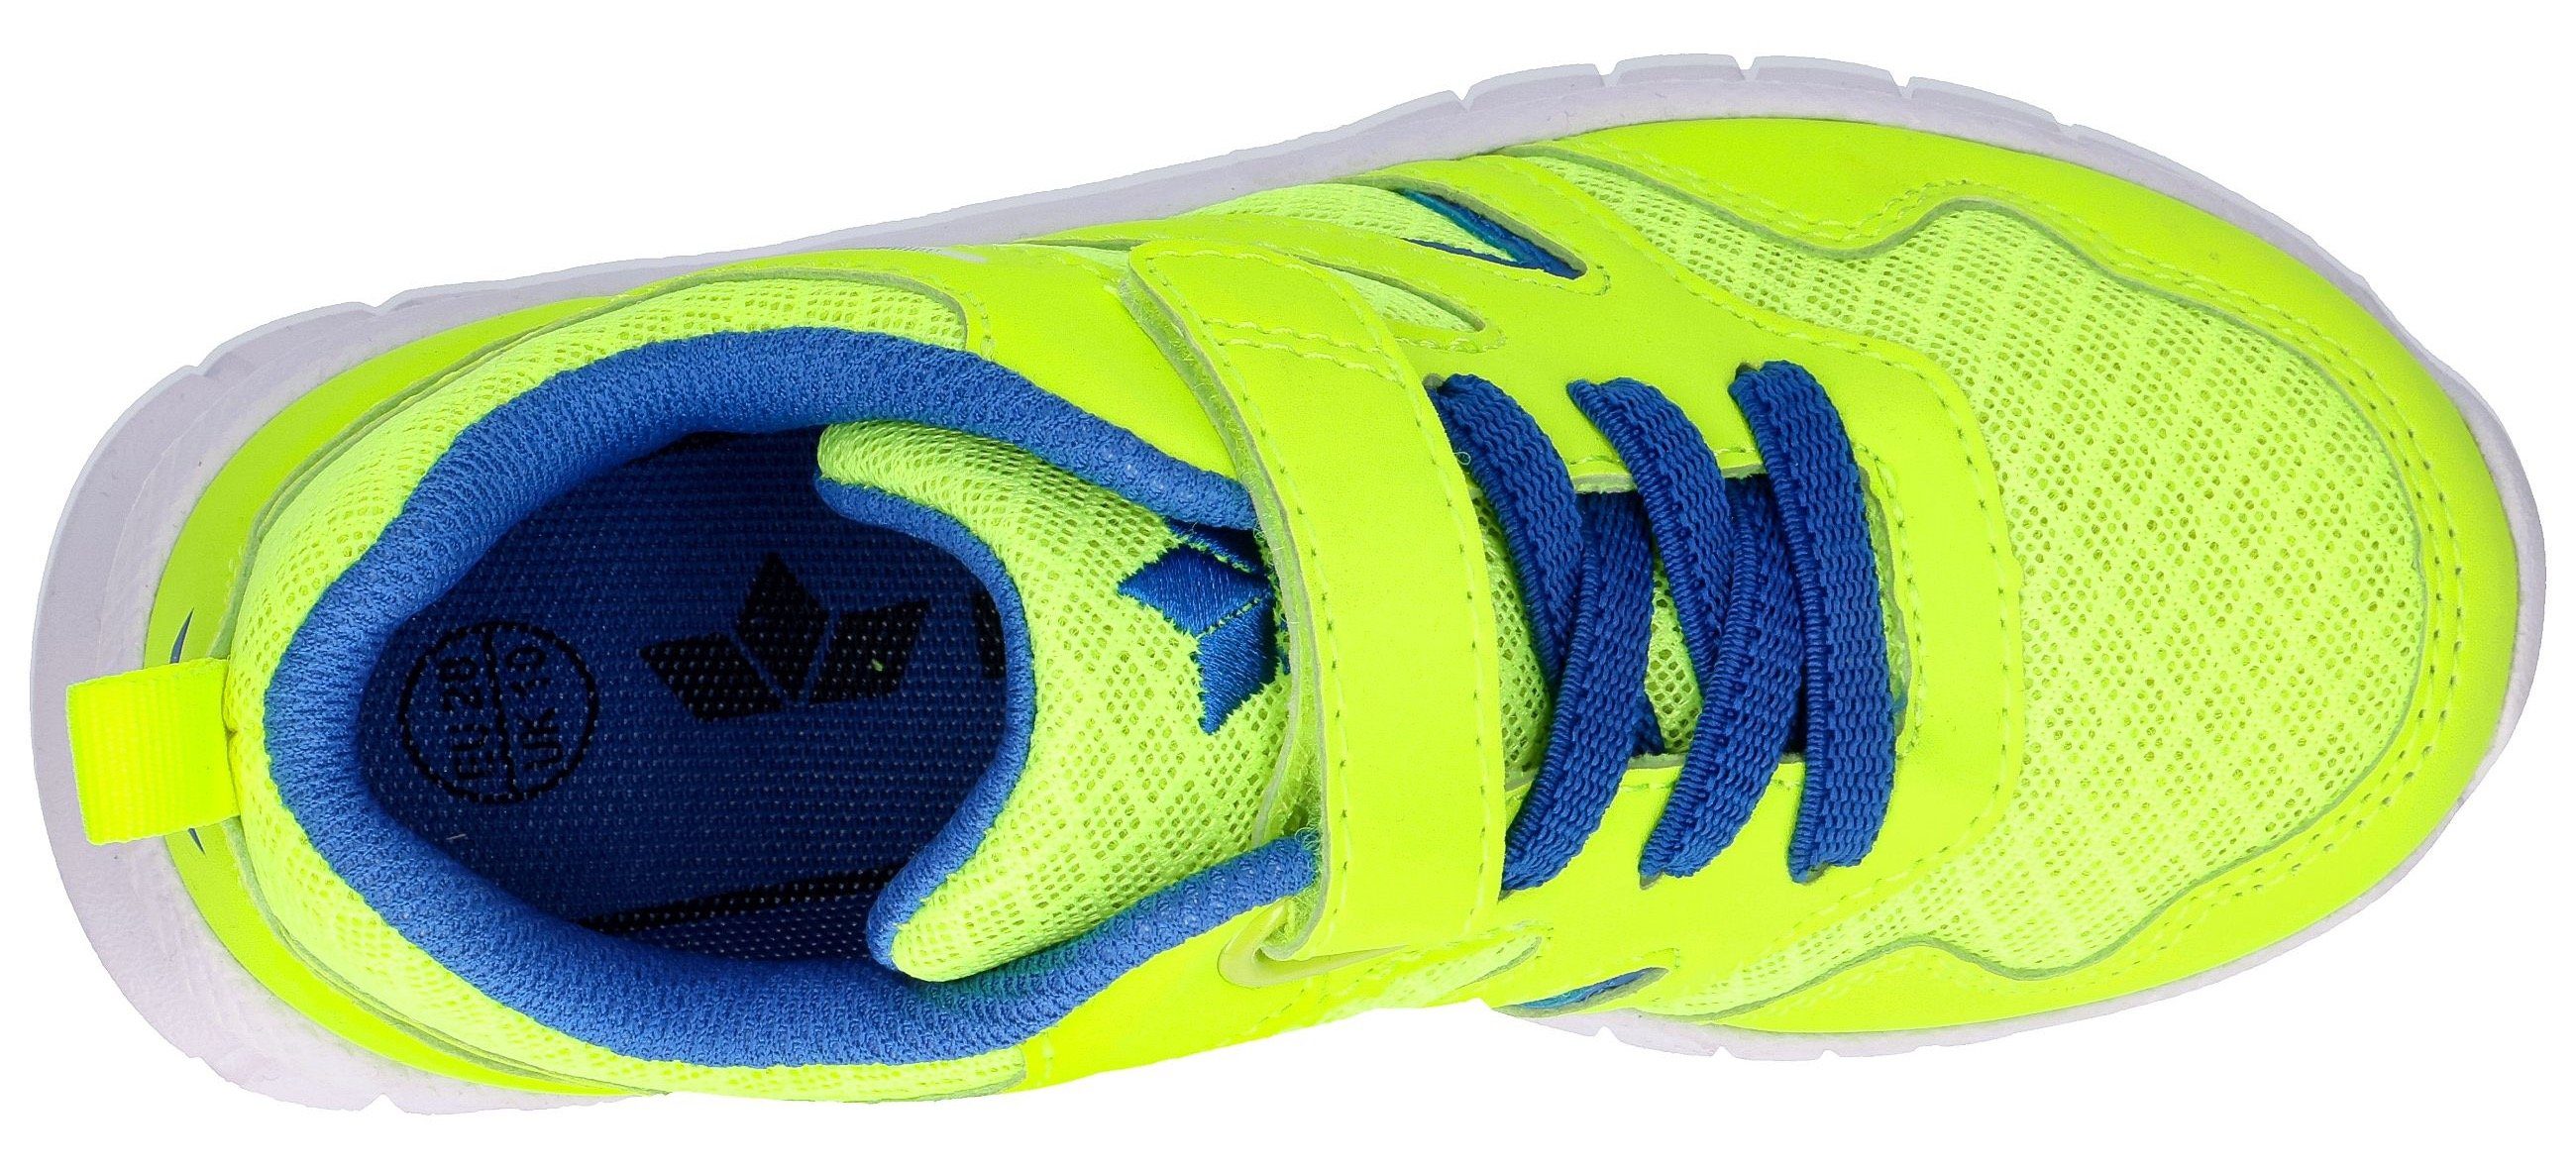 Sneaker Lico mit Gummizug VS Klettriegel SKIP und lemon/blau